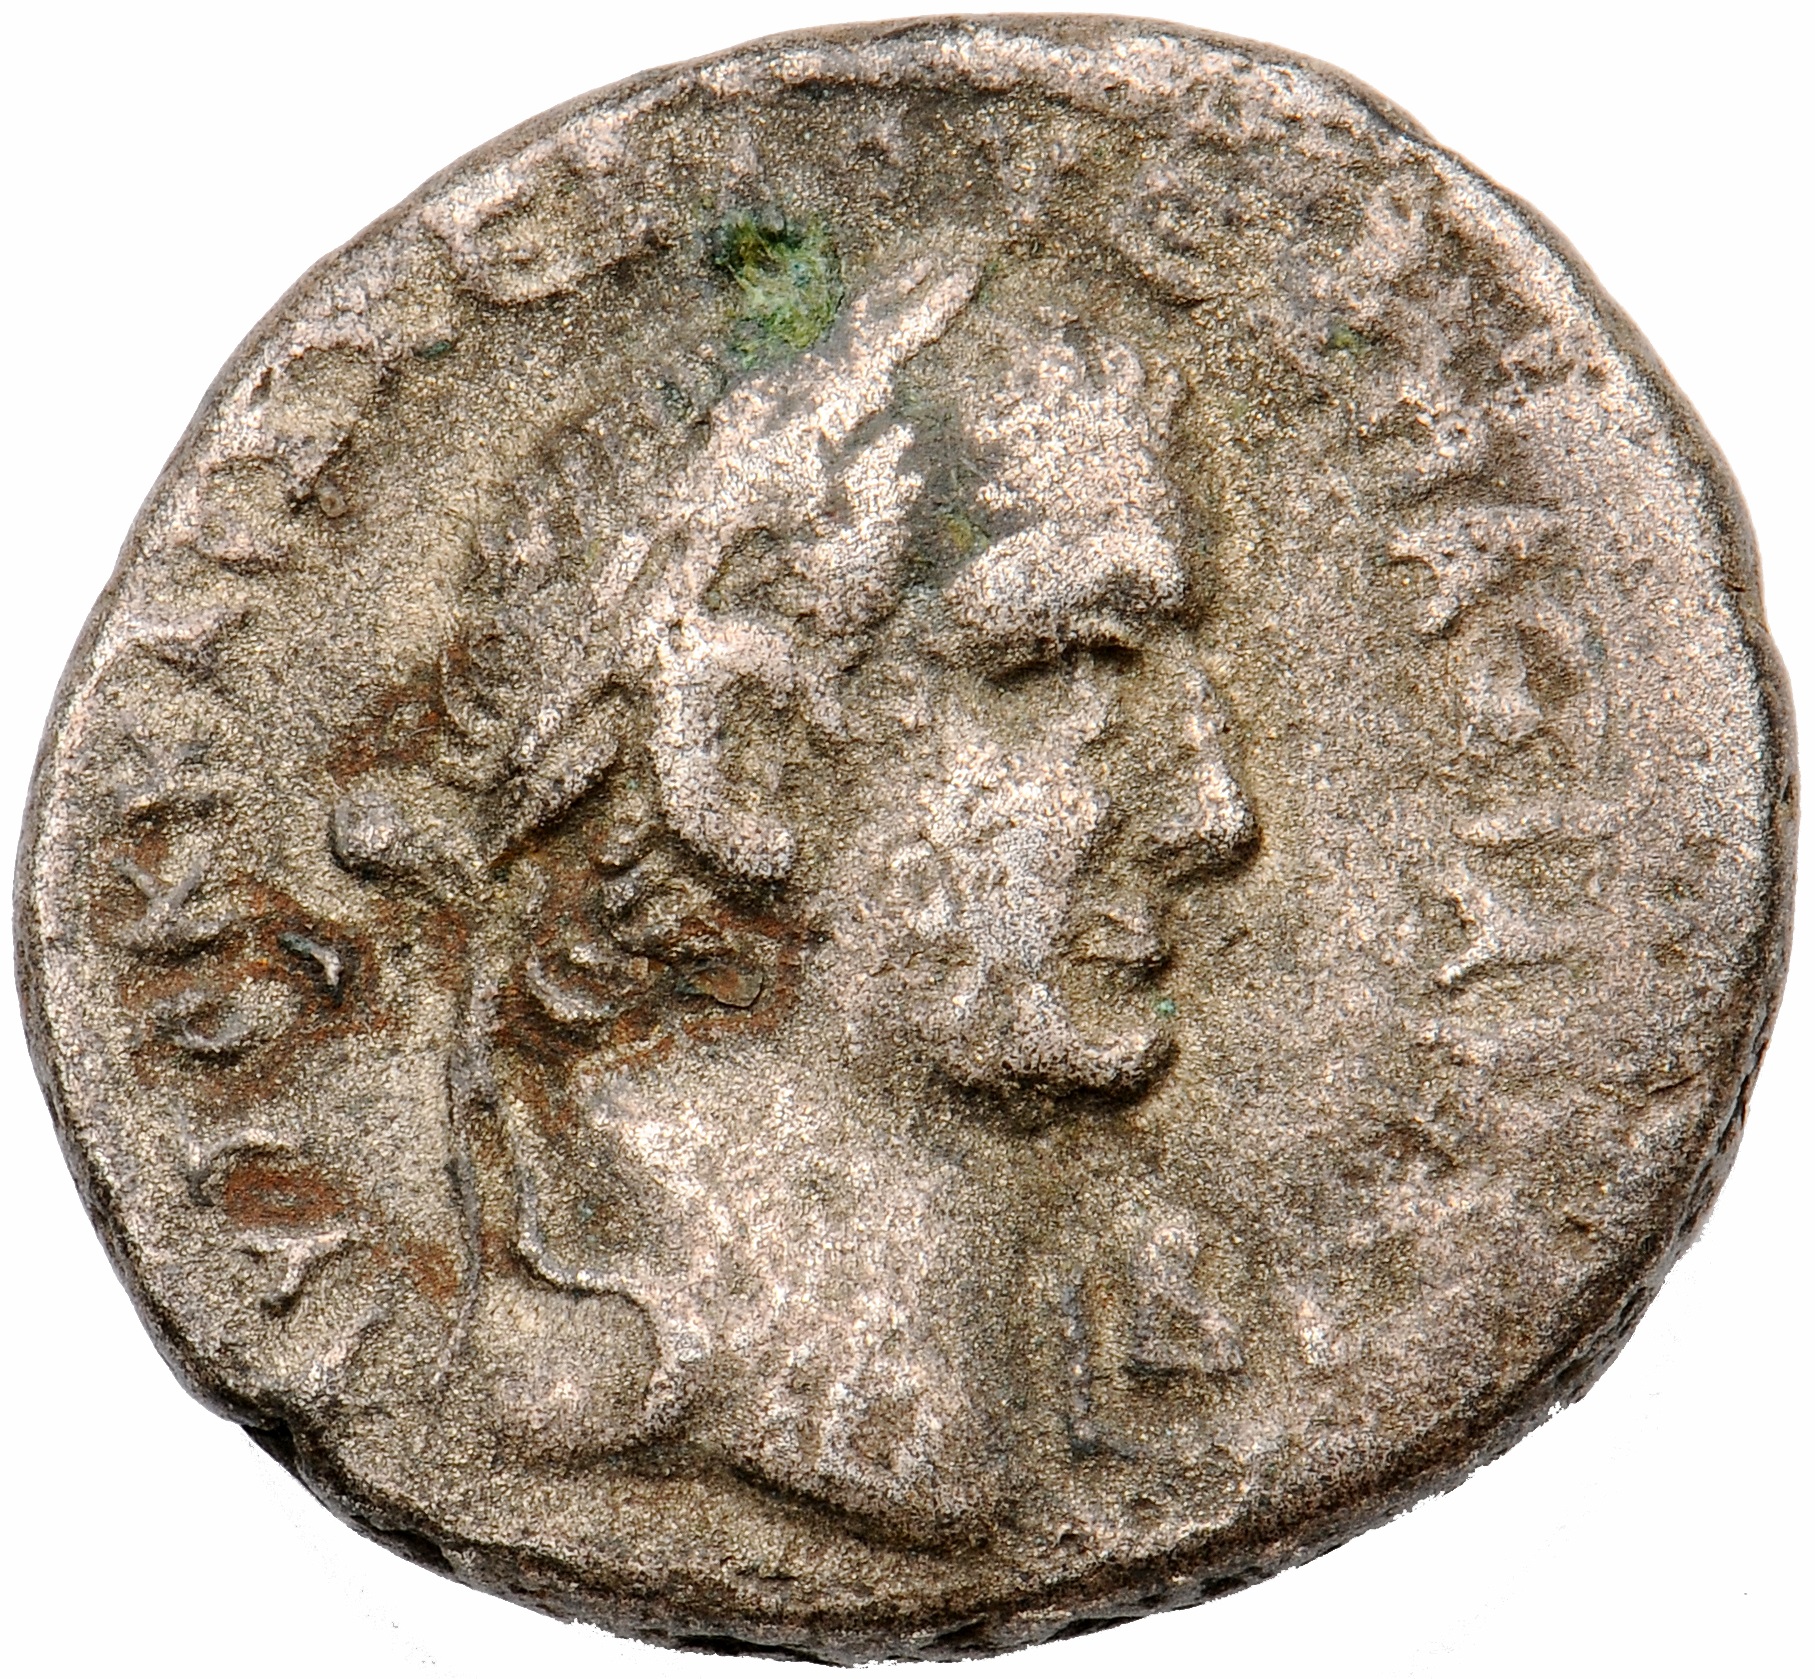 Alexandria ad Aegyptum: Vespasian